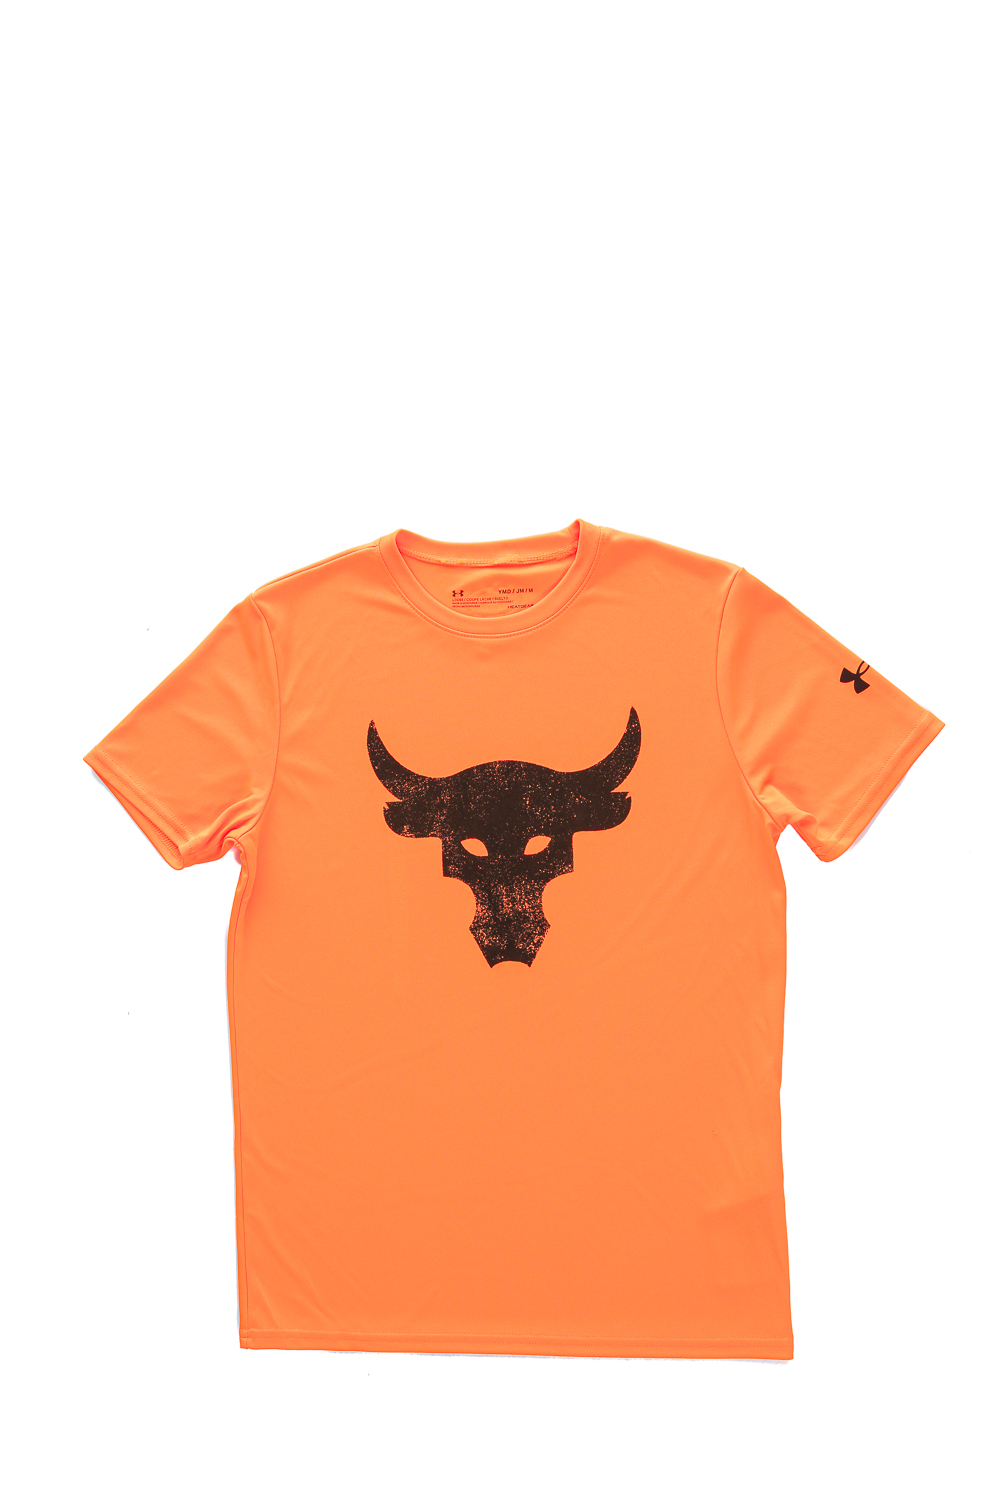 Παιδικά/Boys/Ρούχα/Αθλητικά UNDER ARMOUR - Παιδικό t-shirt UNDER ARMOUR Project Rock BrhmaBull πορτοκαλί